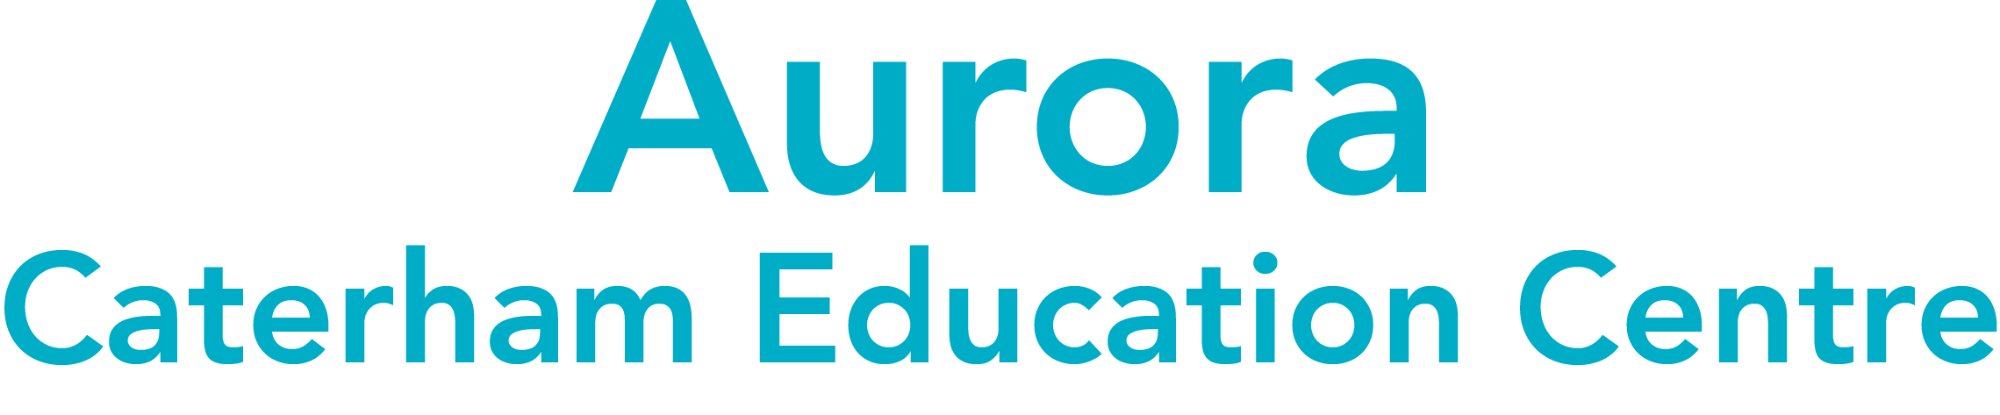 Aurora Caterham Education Centre